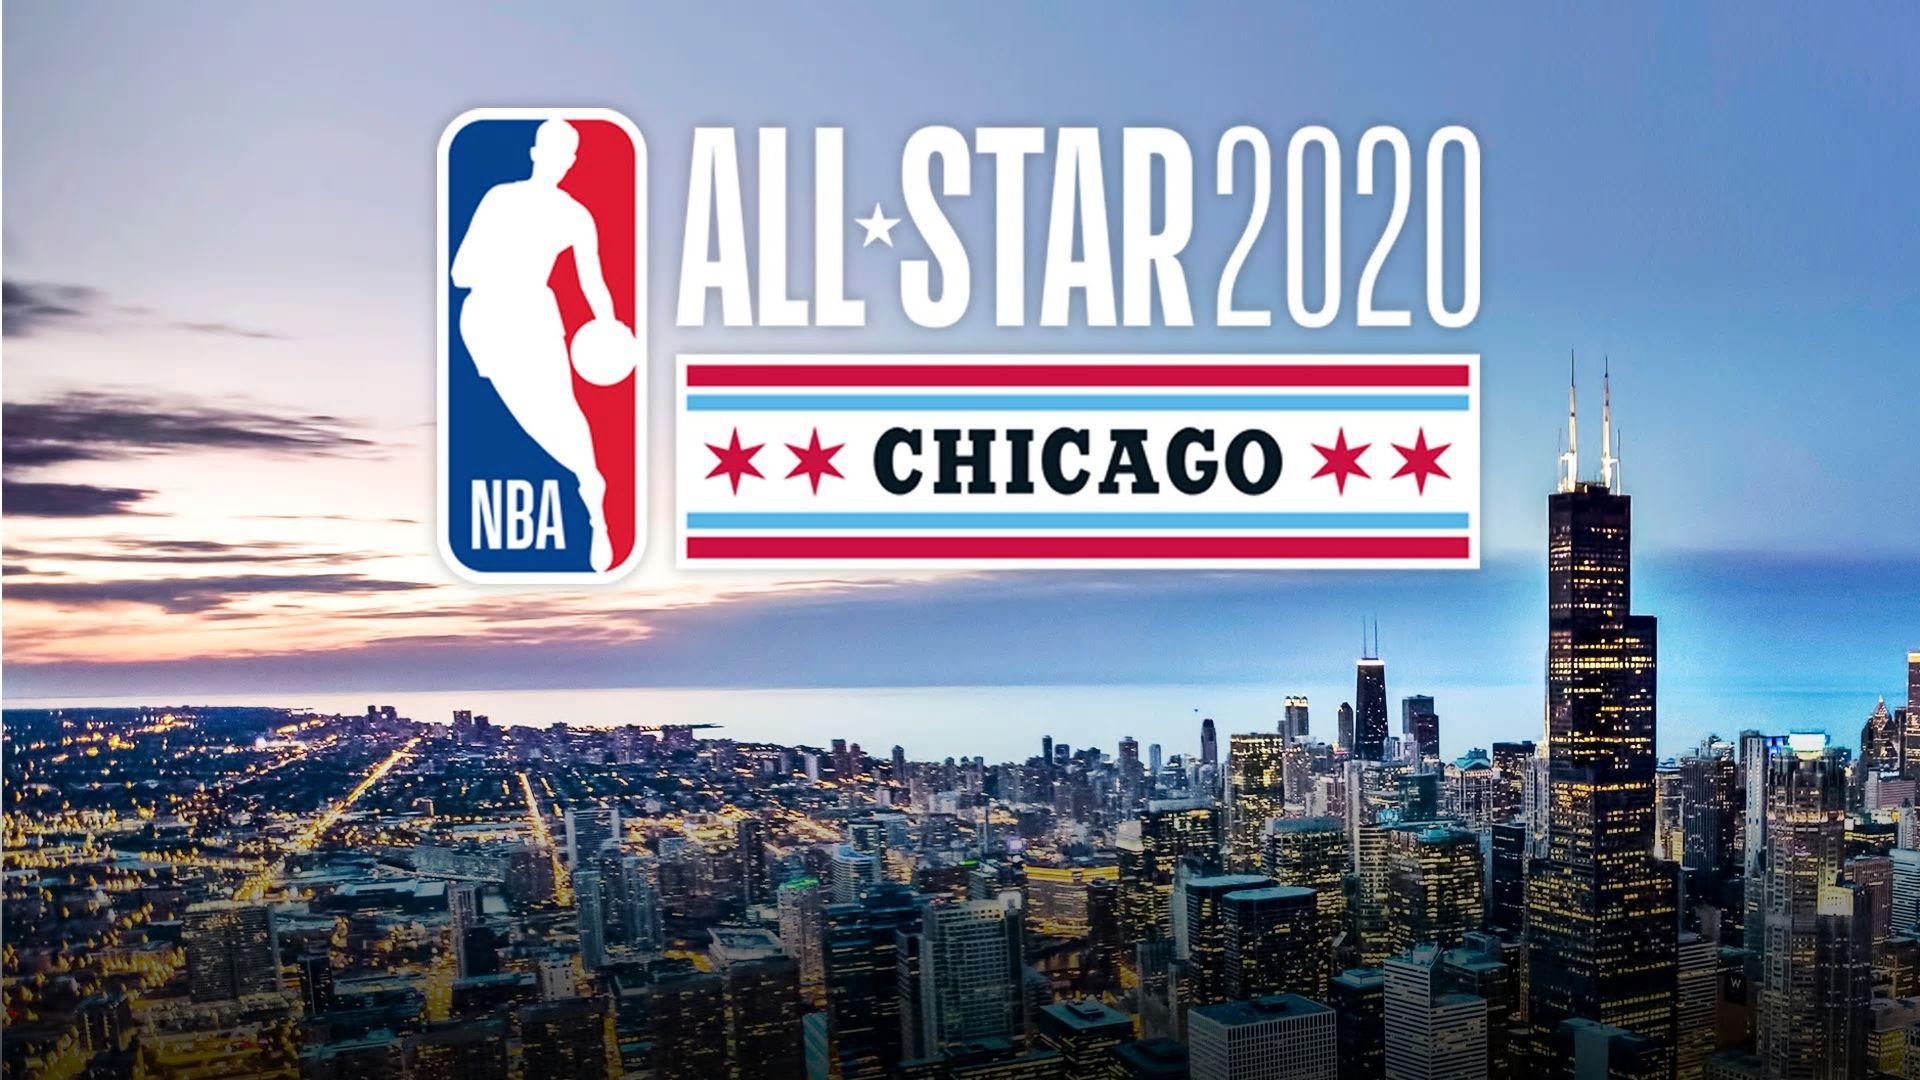 NBA All Star 2020 Wallpaper Free NBA All Star 2020